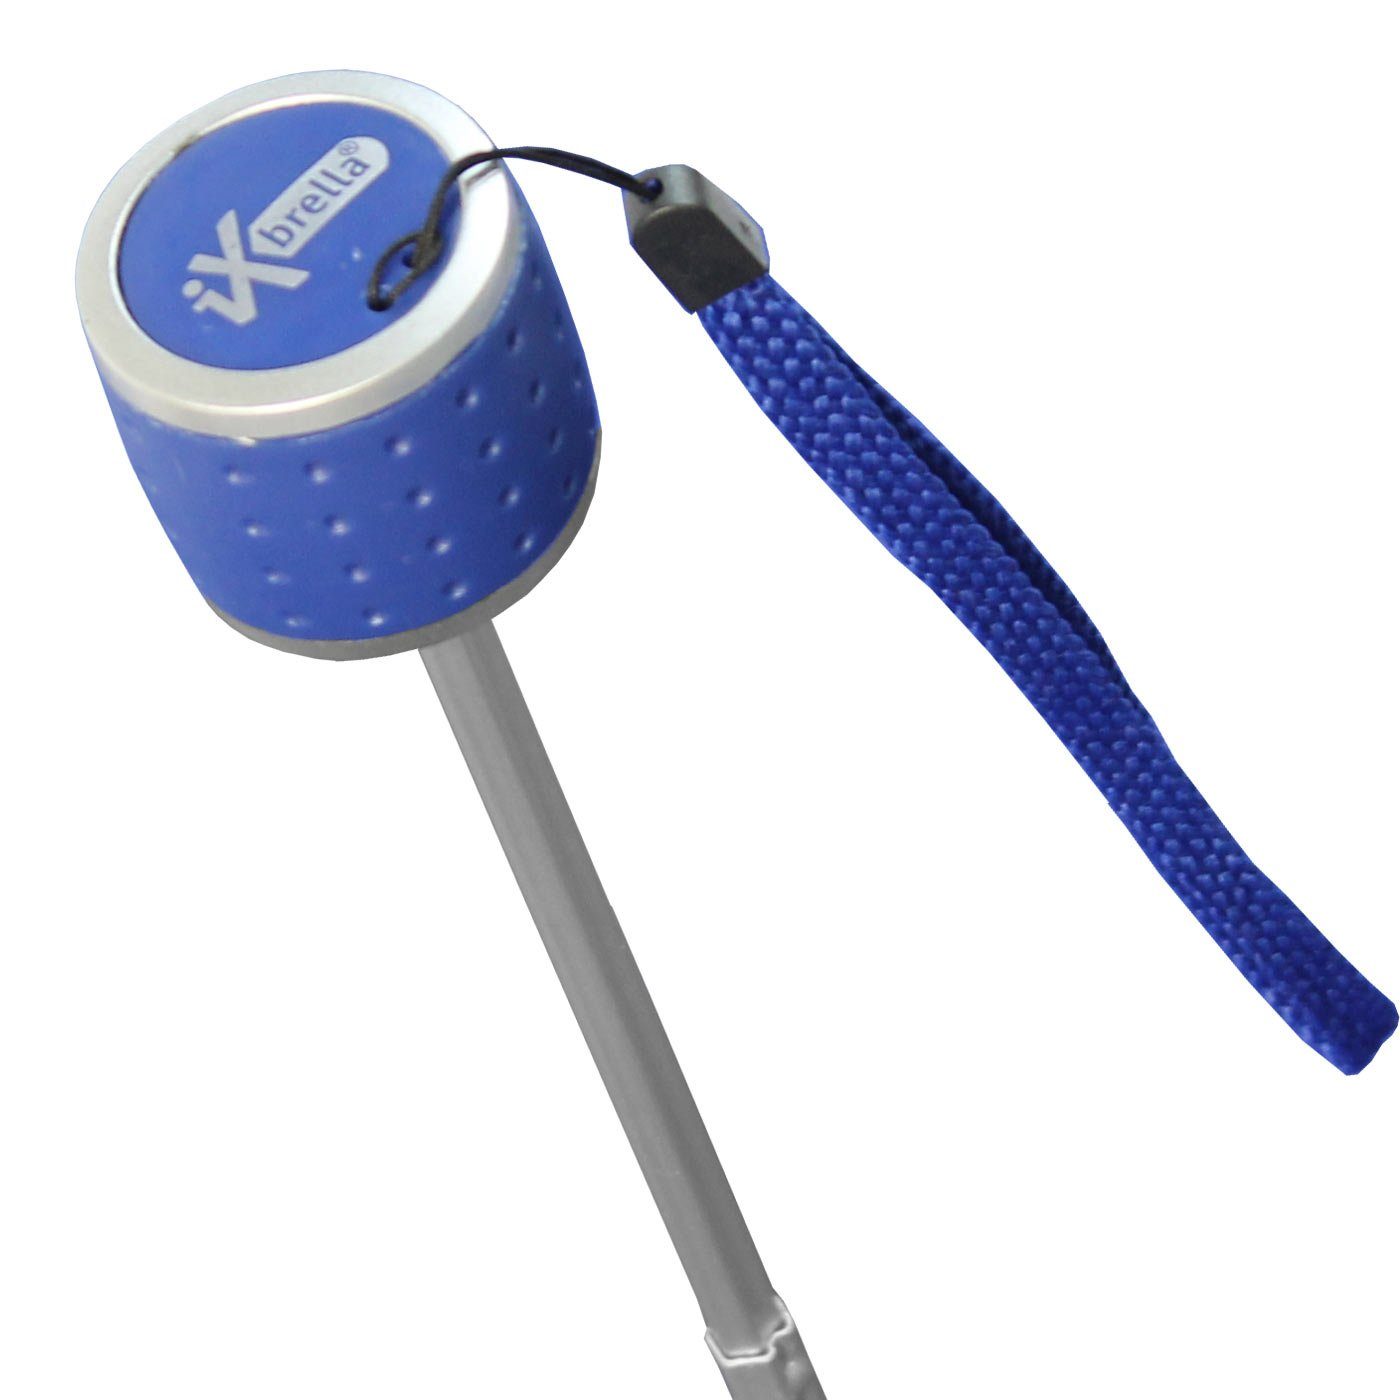 iX-brella Taschenregenschirm mit Light leicht, - Ultra großem blau Dach farbenfroh - Mini extra